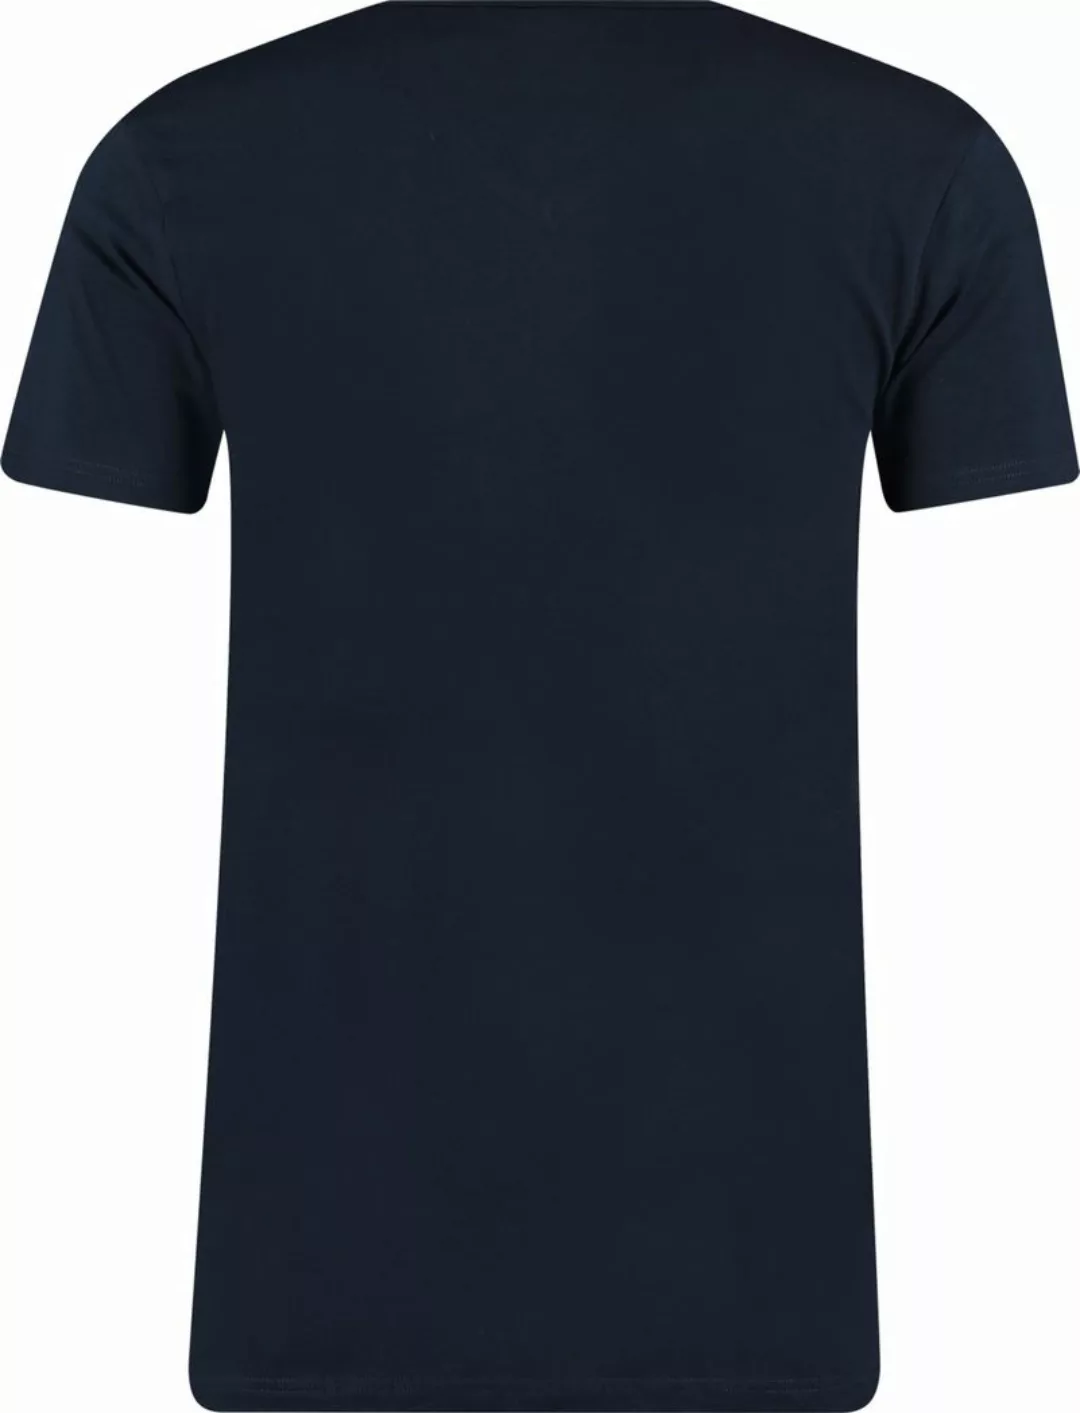 Garage 2-Pack Basic T-shirt Bio V-Ausschnitt Dunkelblau - Größe S günstig online kaufen